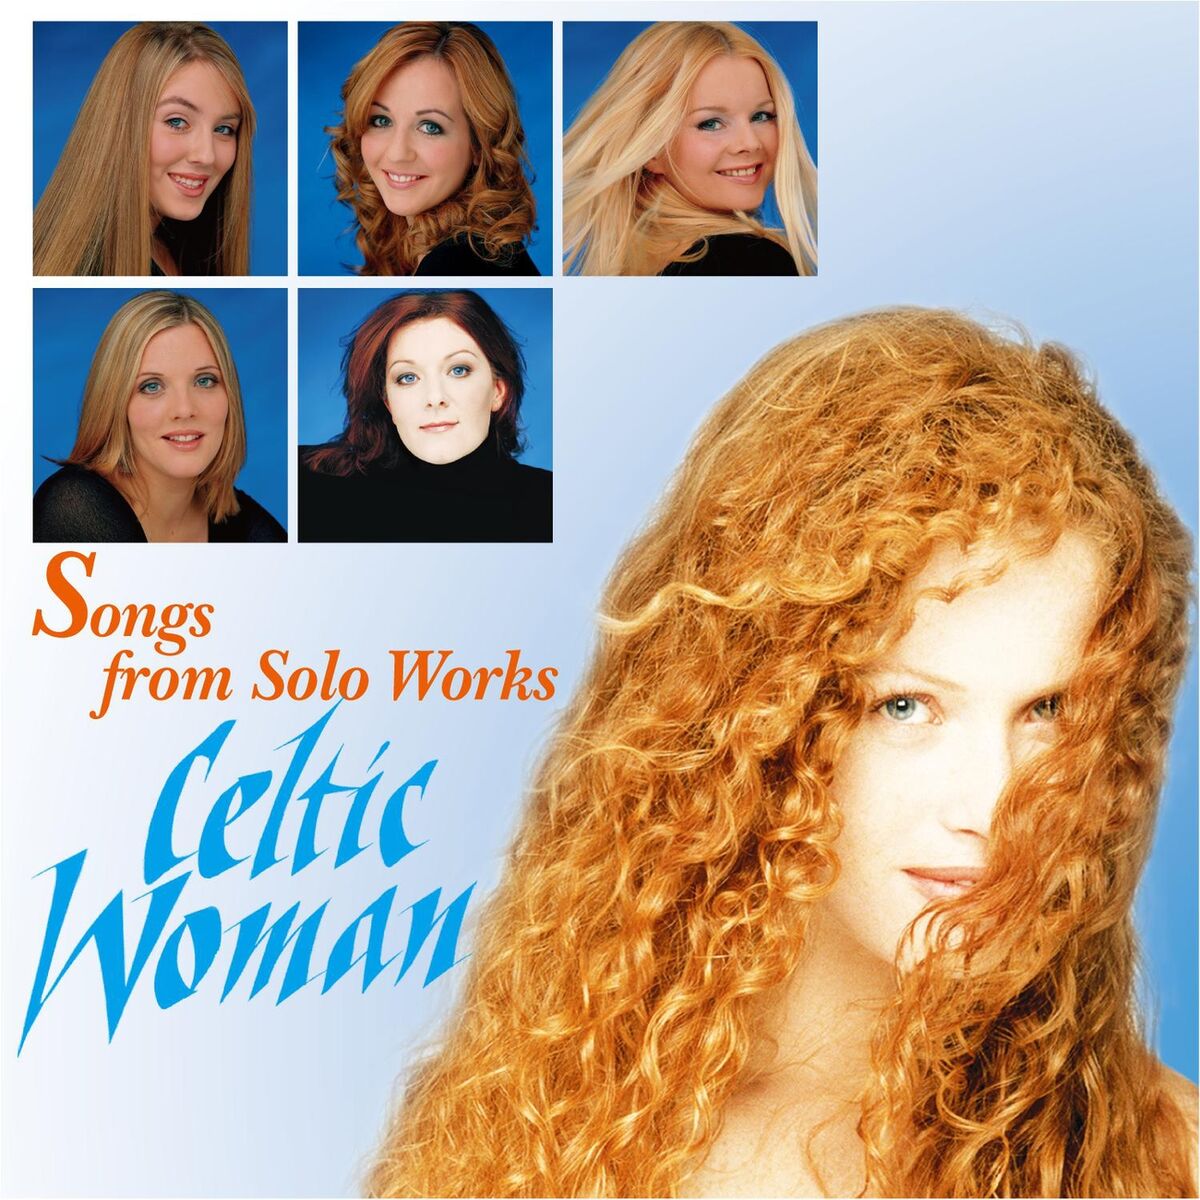 ケルティック・ウーマン - Songs From Solo Works: Celtic Woman: 歌詞と曲 | Deezer